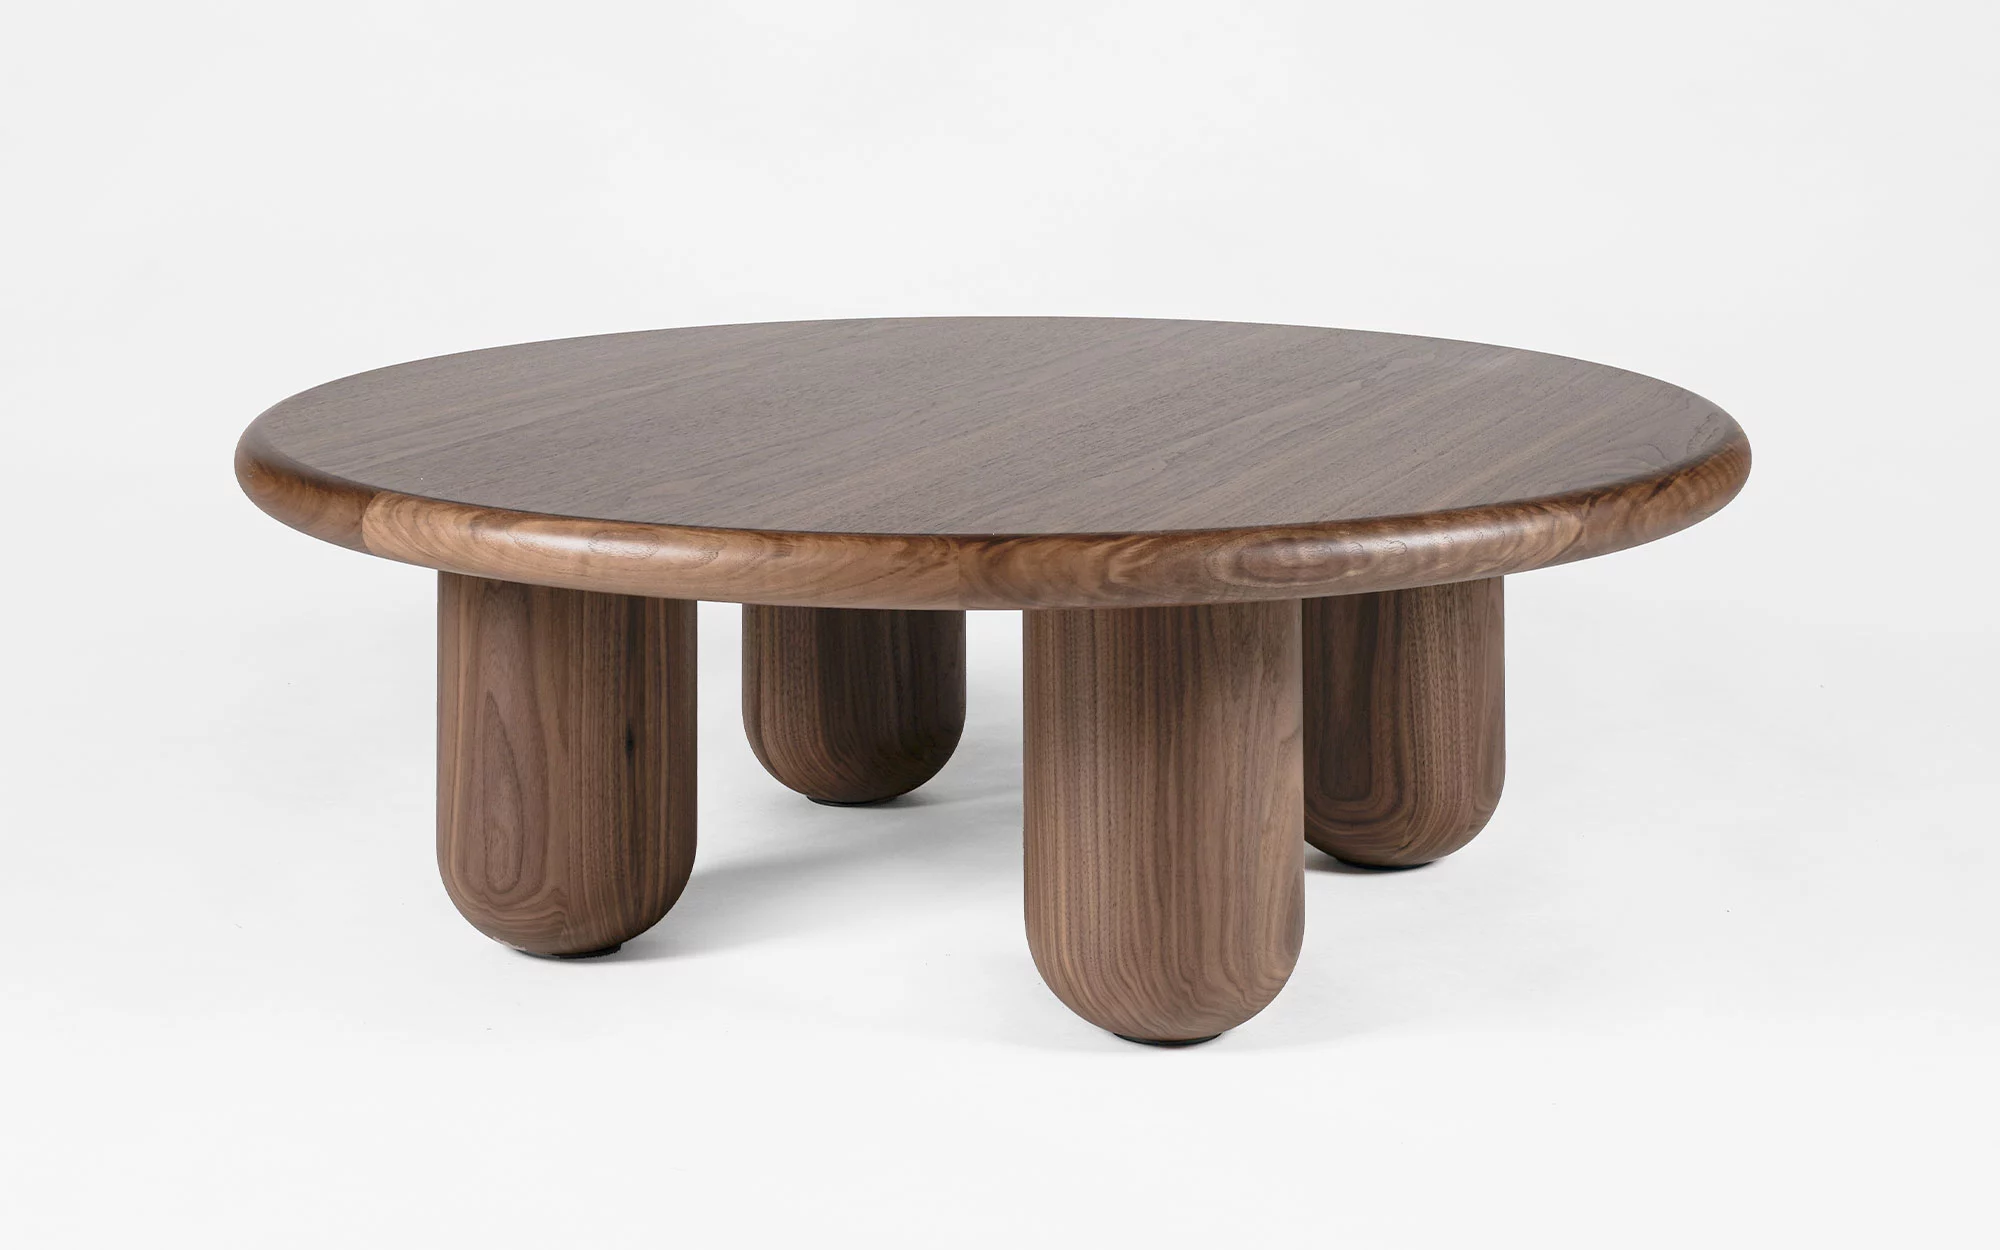 Organism coffee table - Jaime Hayon - Side table - Galerie kreo